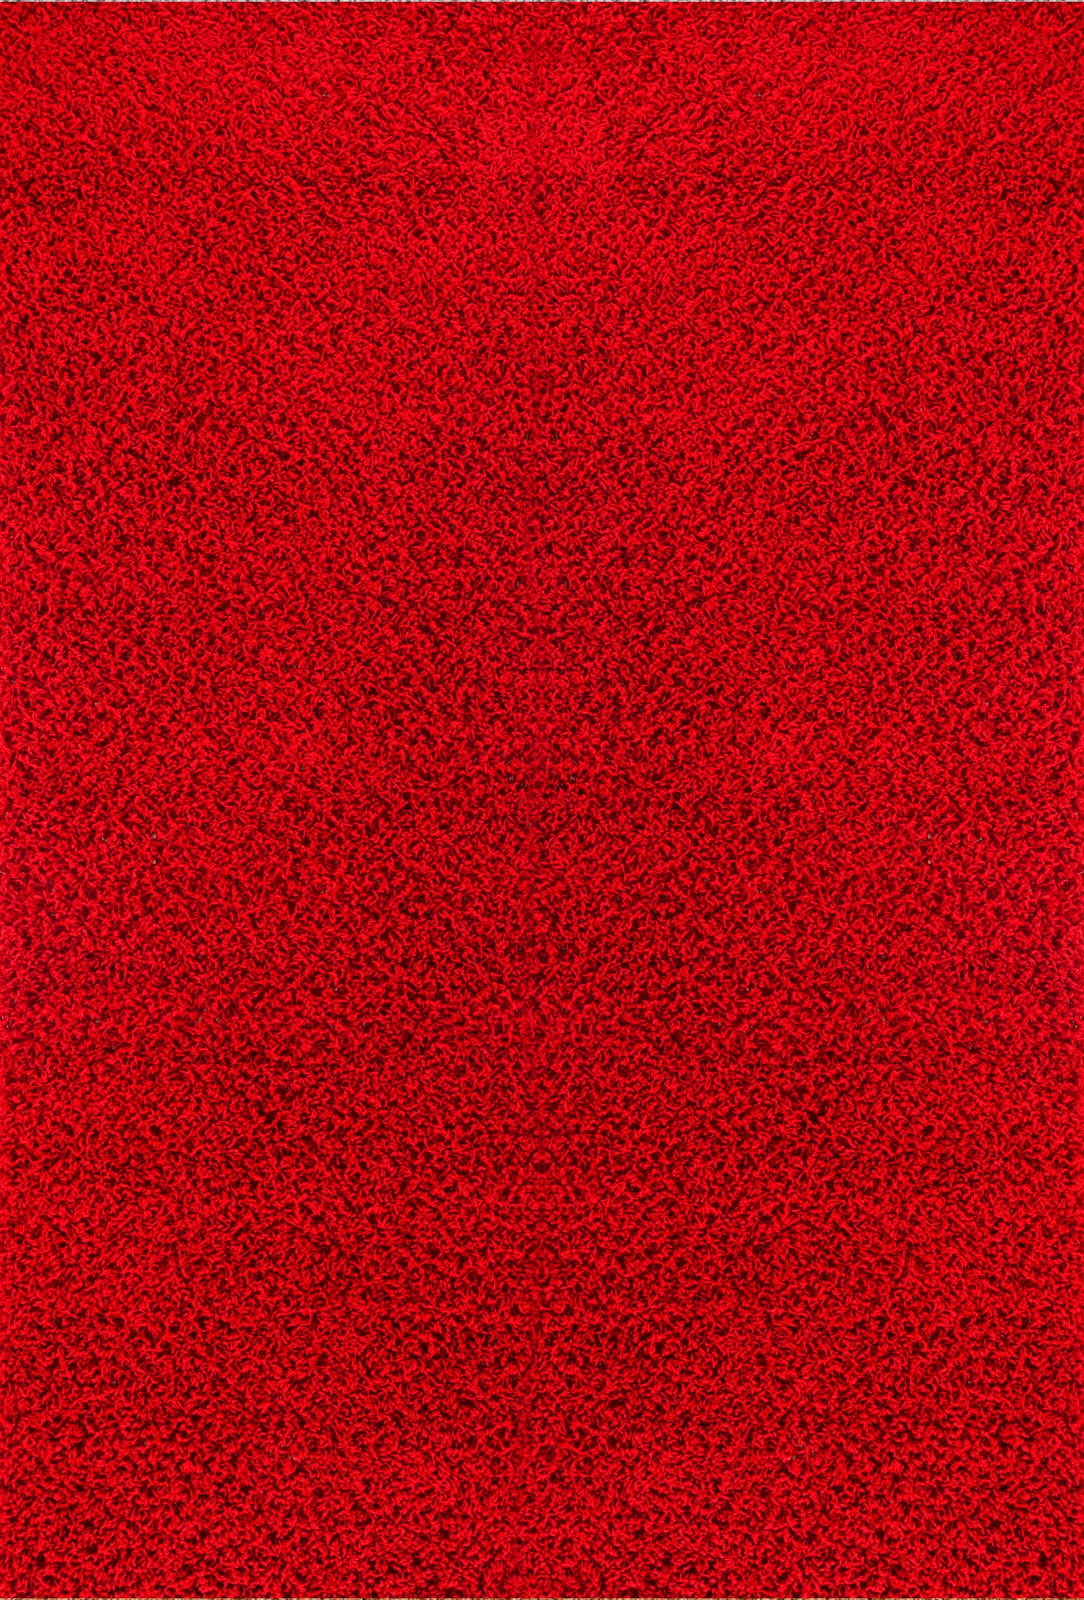 Surya Hochflor-Teppich »UNI CHIC 2309«, rechteckig, Flauschig, Langflor, Weich, Wohnzimmer Flurteppich, Rot